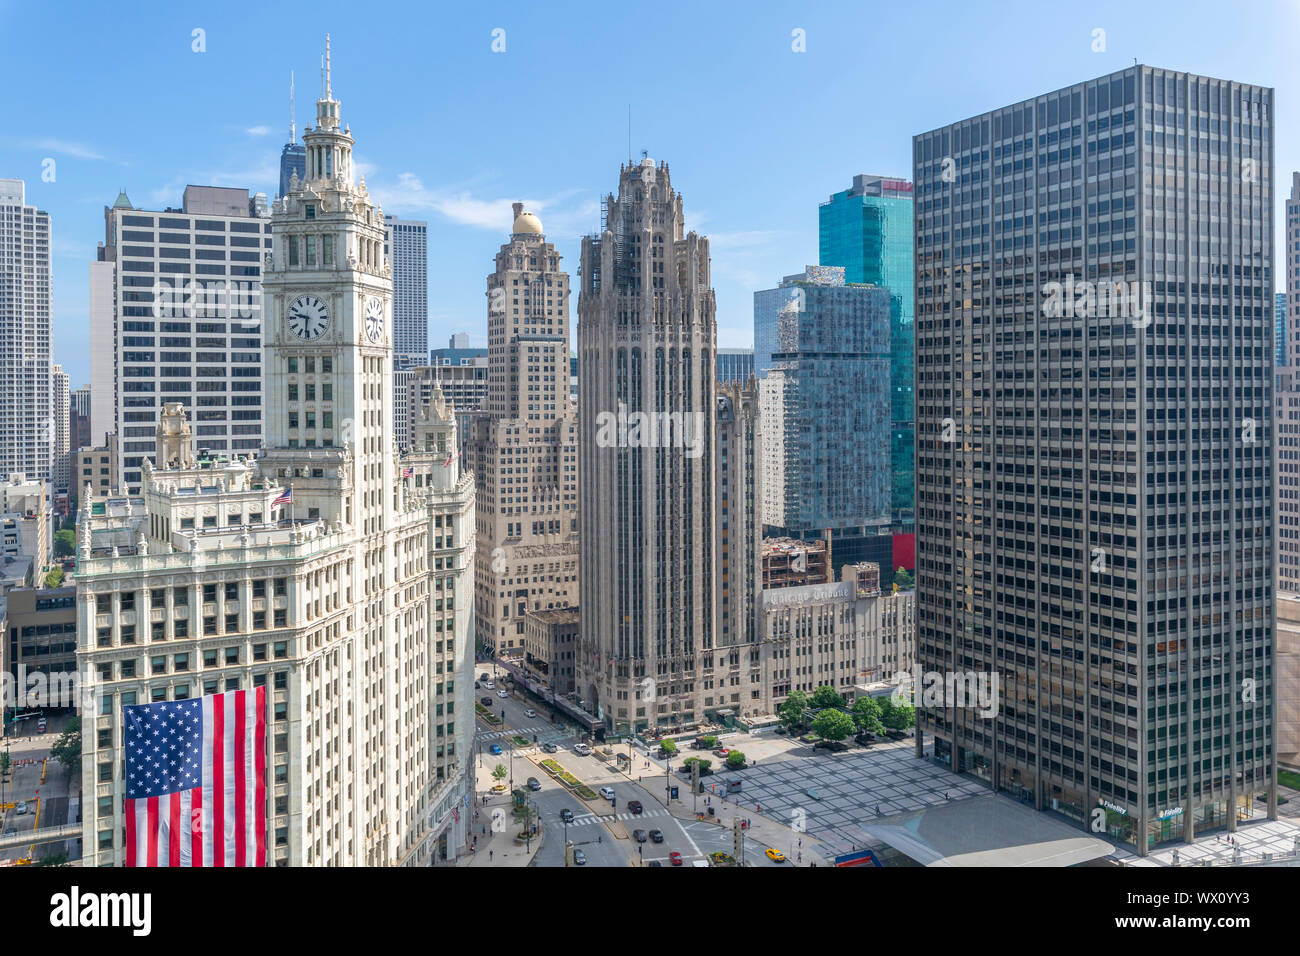 Avis de Wrigley Building à partir de la terrasse sur le toit, le centre-ville de Chicago, Illinois, États-Unis d'Amérique, Amérique du Nord Banque D'Images